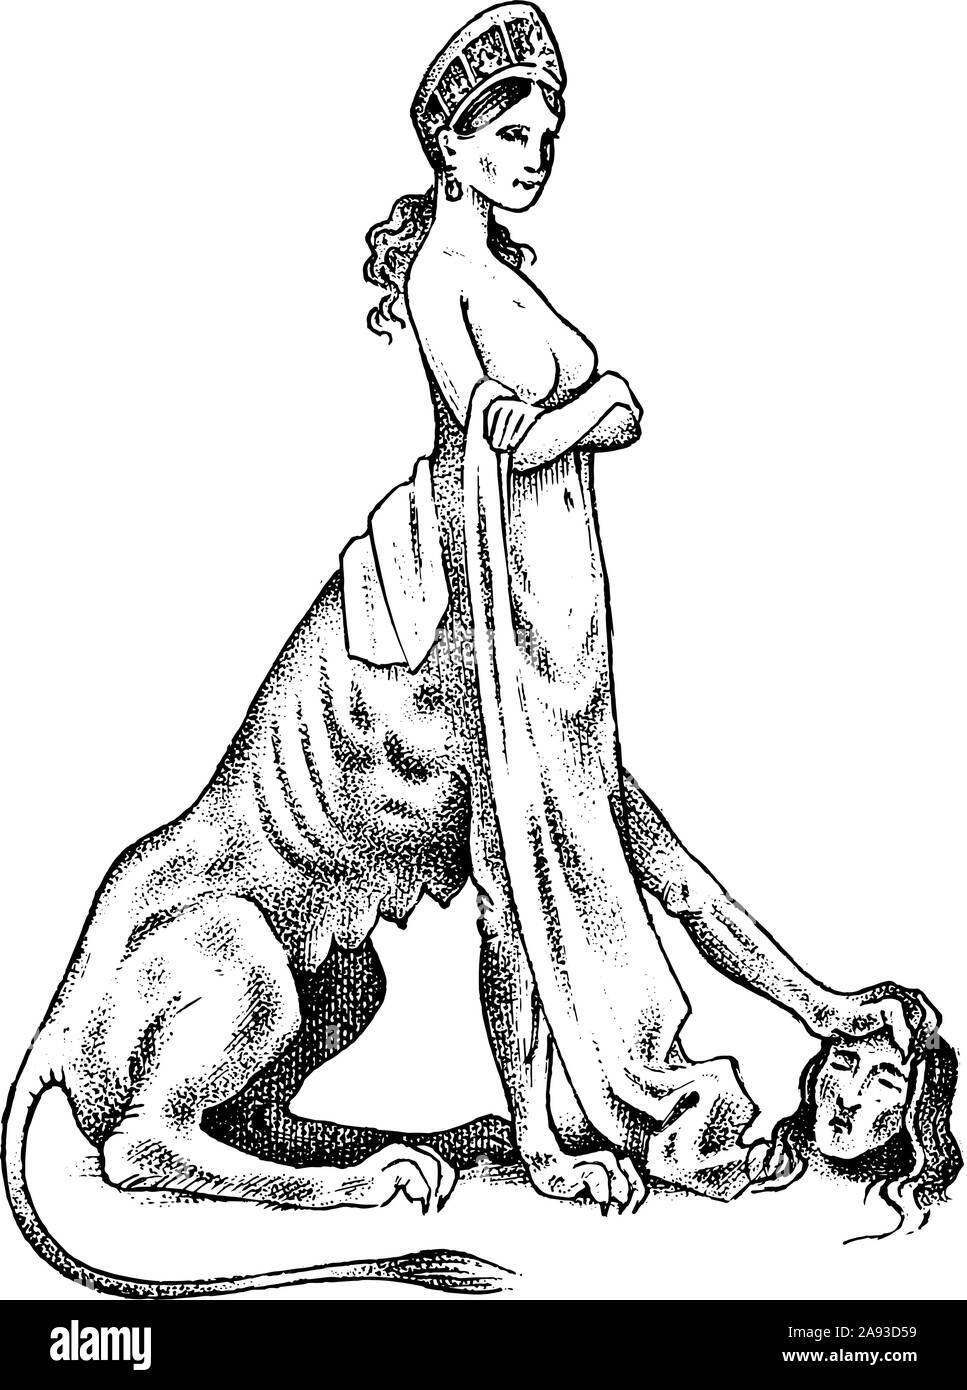 Mythischen Sphinx. Mythologisches Tier. Alte menschliche Löwe, fantastische Kreaturen in der alten Vintage Style. Graviert Hand gezeichnet alte Skizze. Stock Vektor